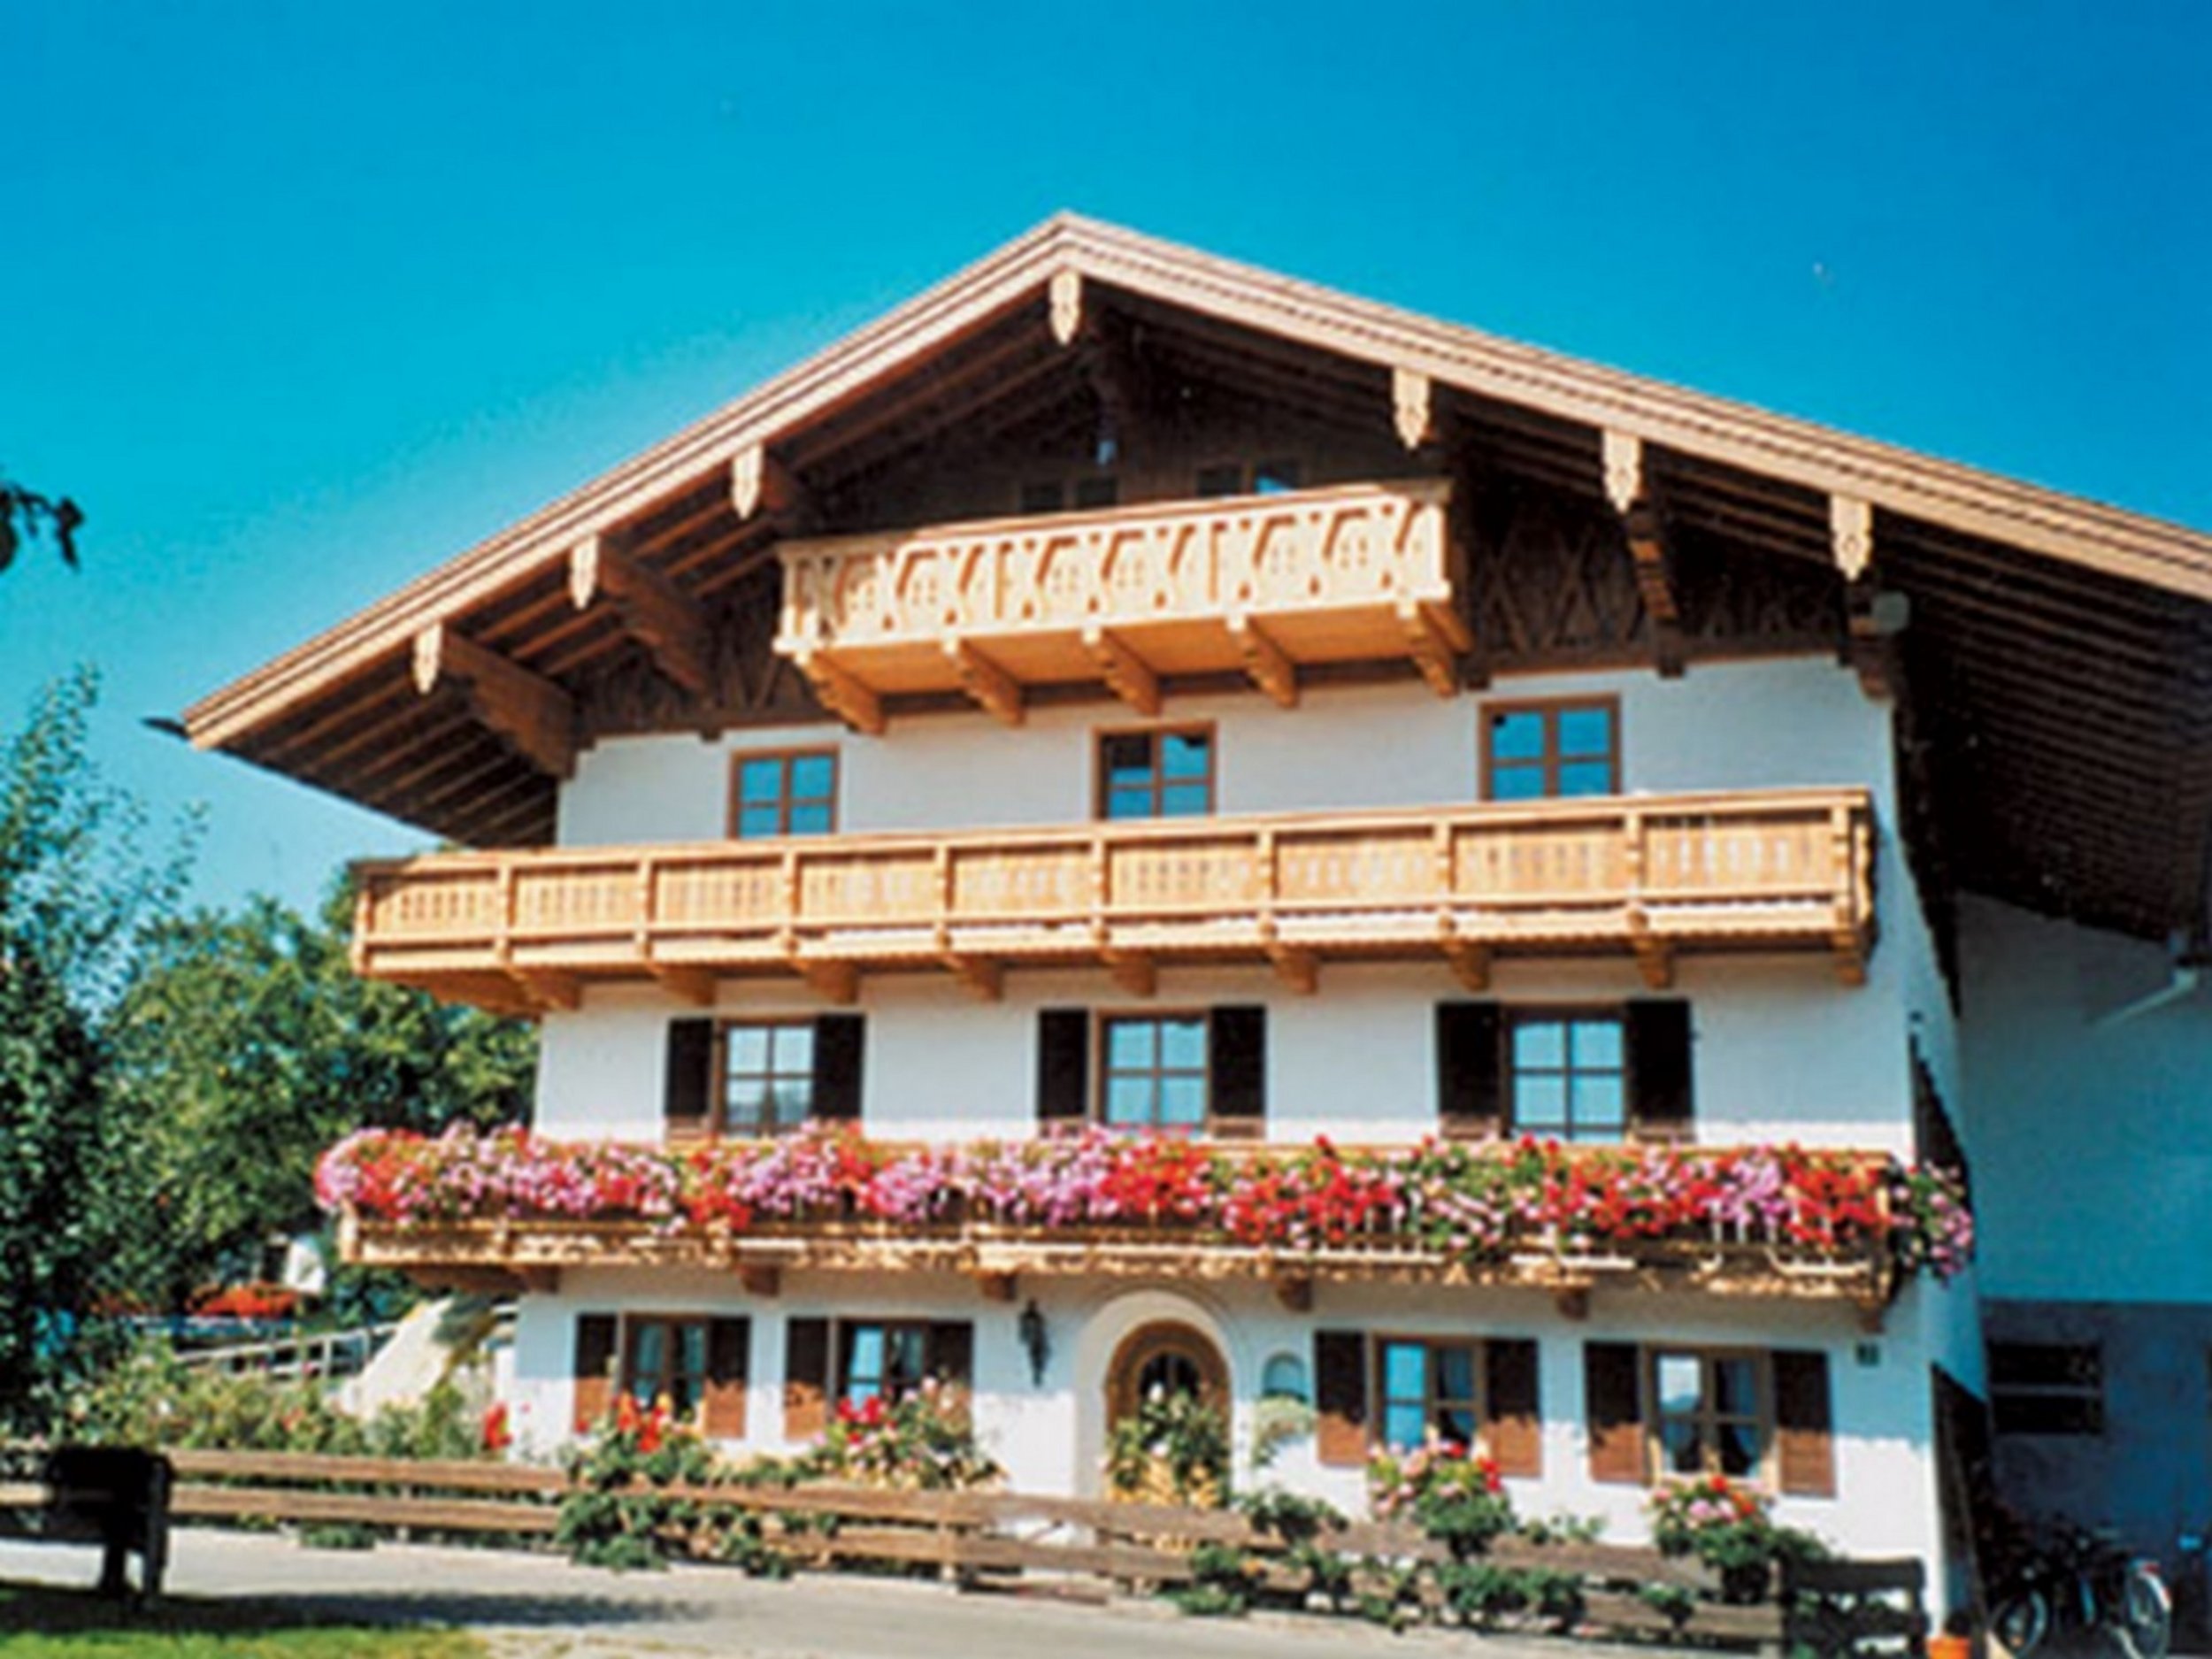 Schwaigerhof